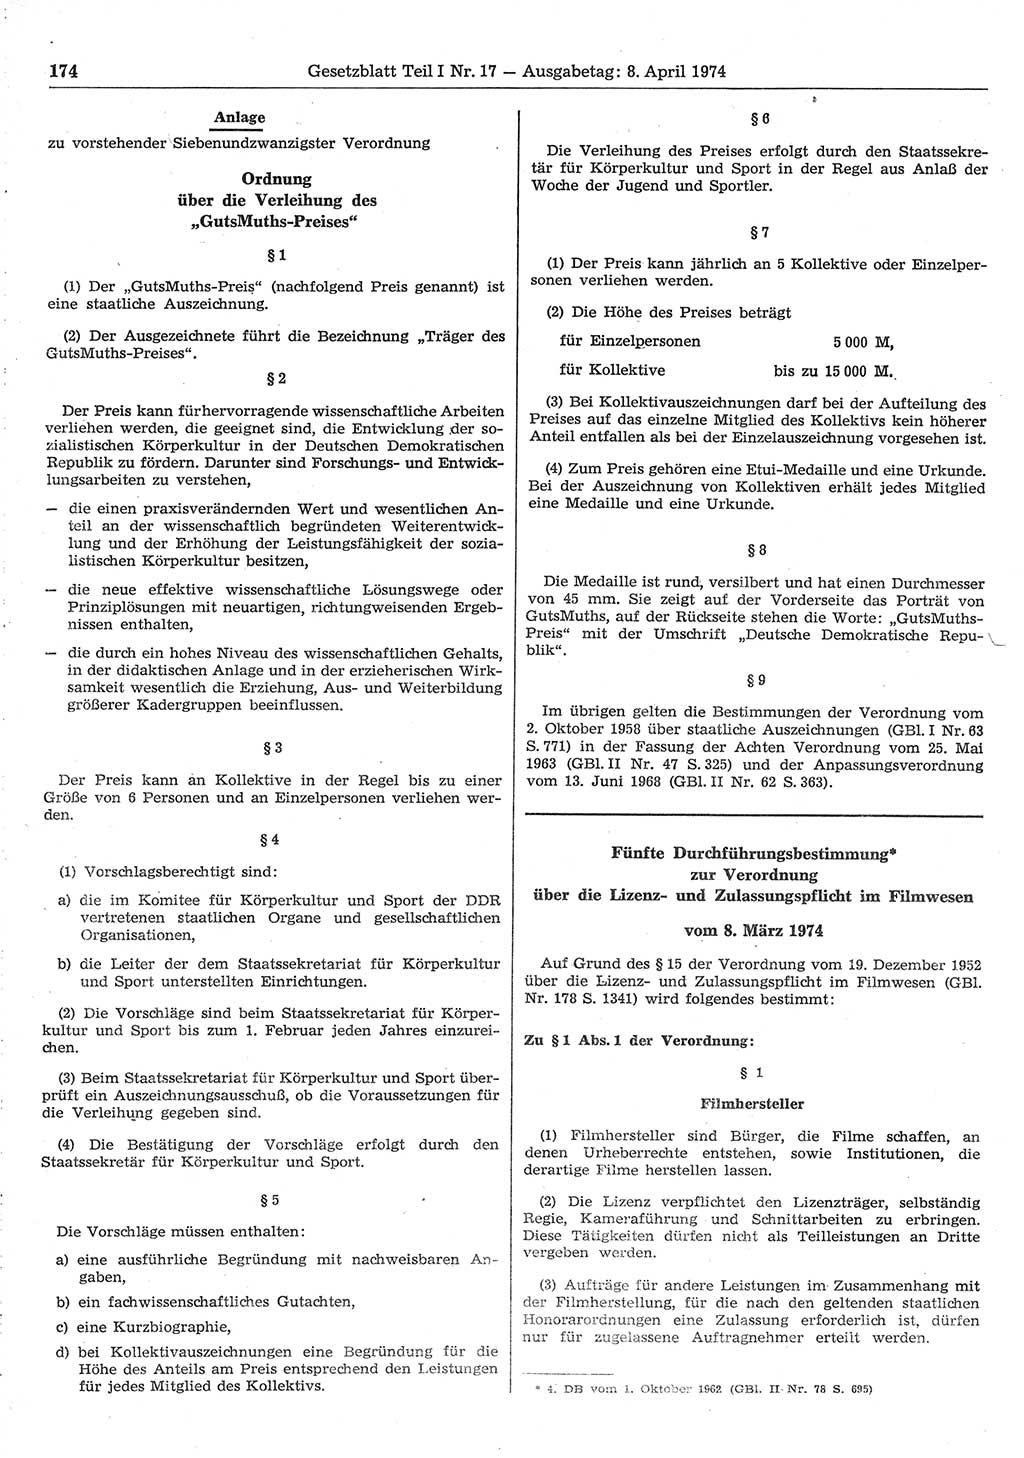 Gesetzblatt (GBl.) der Deutschen Demokratischen Republik (DDR) Teil Ⅰ 1974, Seite 174 (GBl. DDR Ⅰ 1974, S. 174)